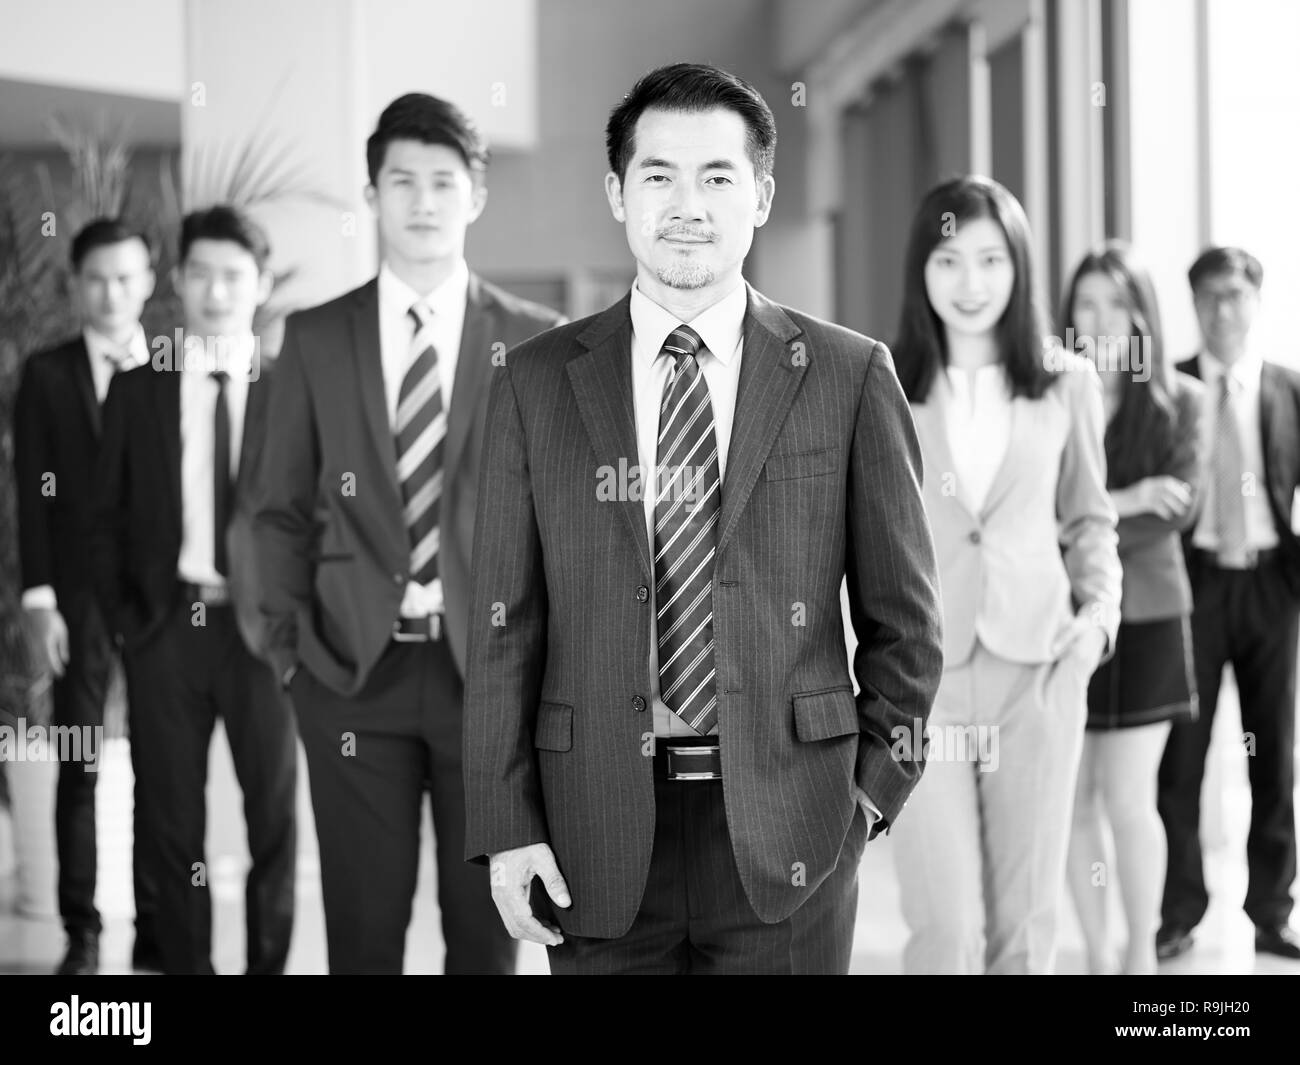 Portrait d'une équipe d'hommes et de femmes d'affaires asiatiques, looking at camera, noir et blanc. Banque D'Images